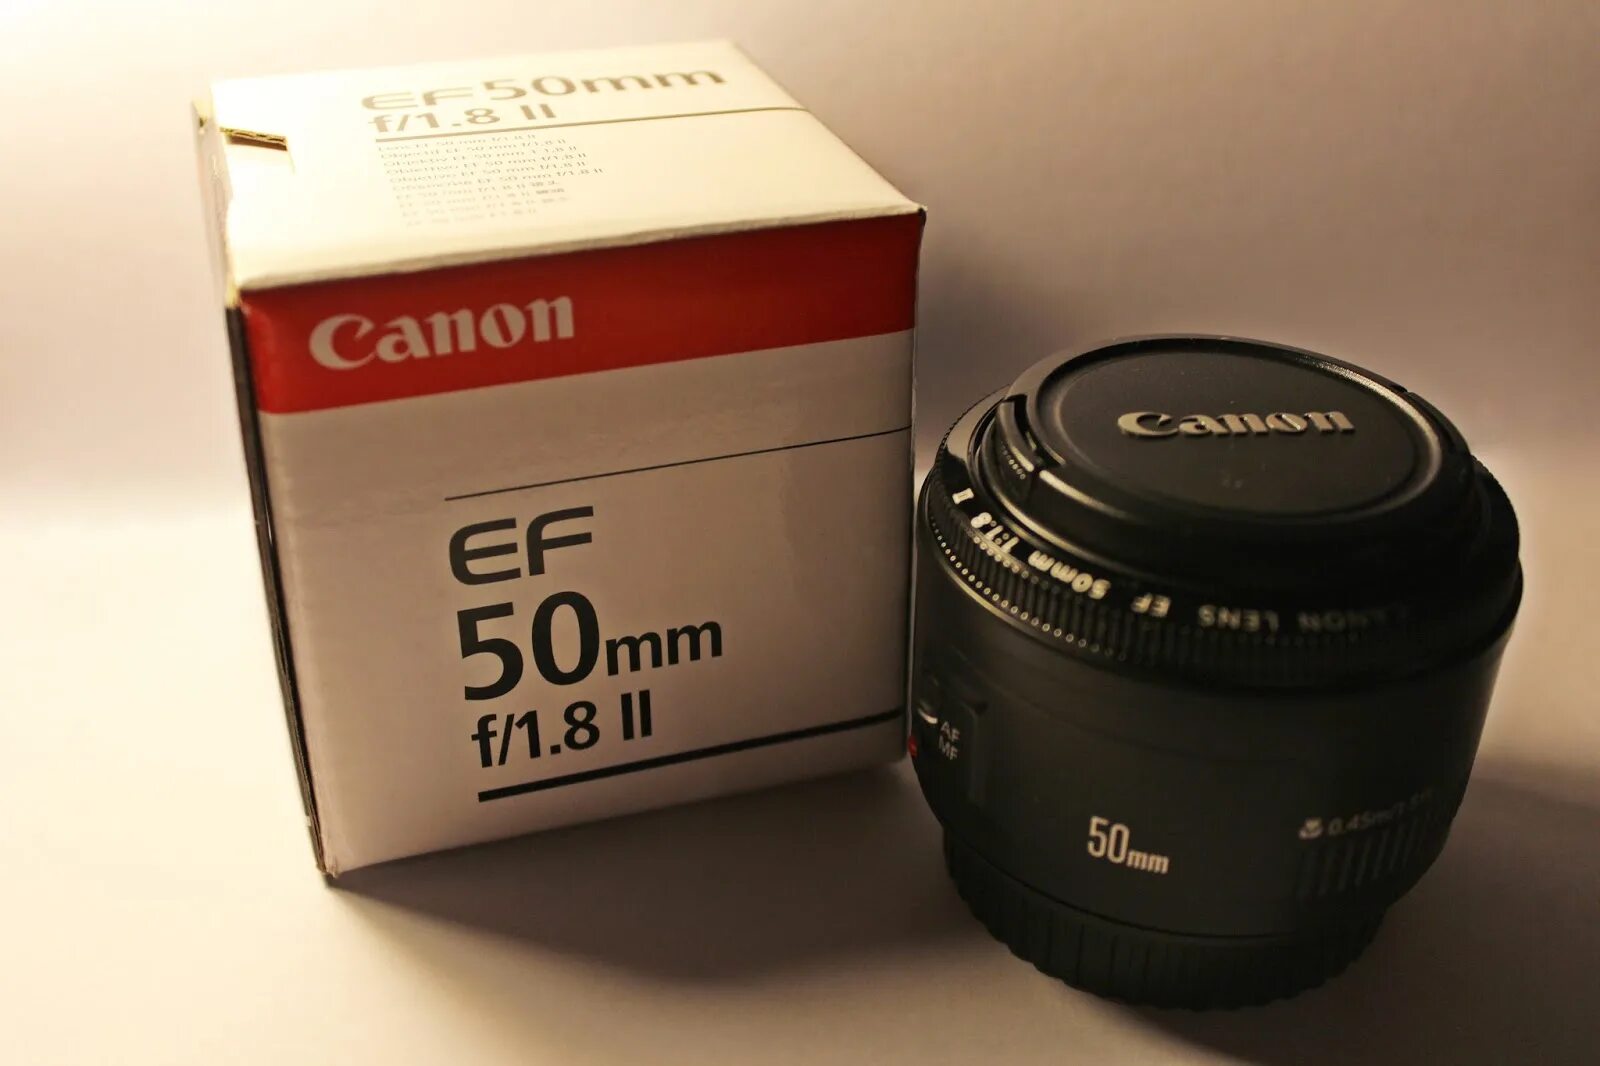 50 миллиметров. Canon 50mm f1.8 II. Canon EF 50 1.8 II. Ef50mm f/1.8 II. Кэнон 50mm f/1.8 II.